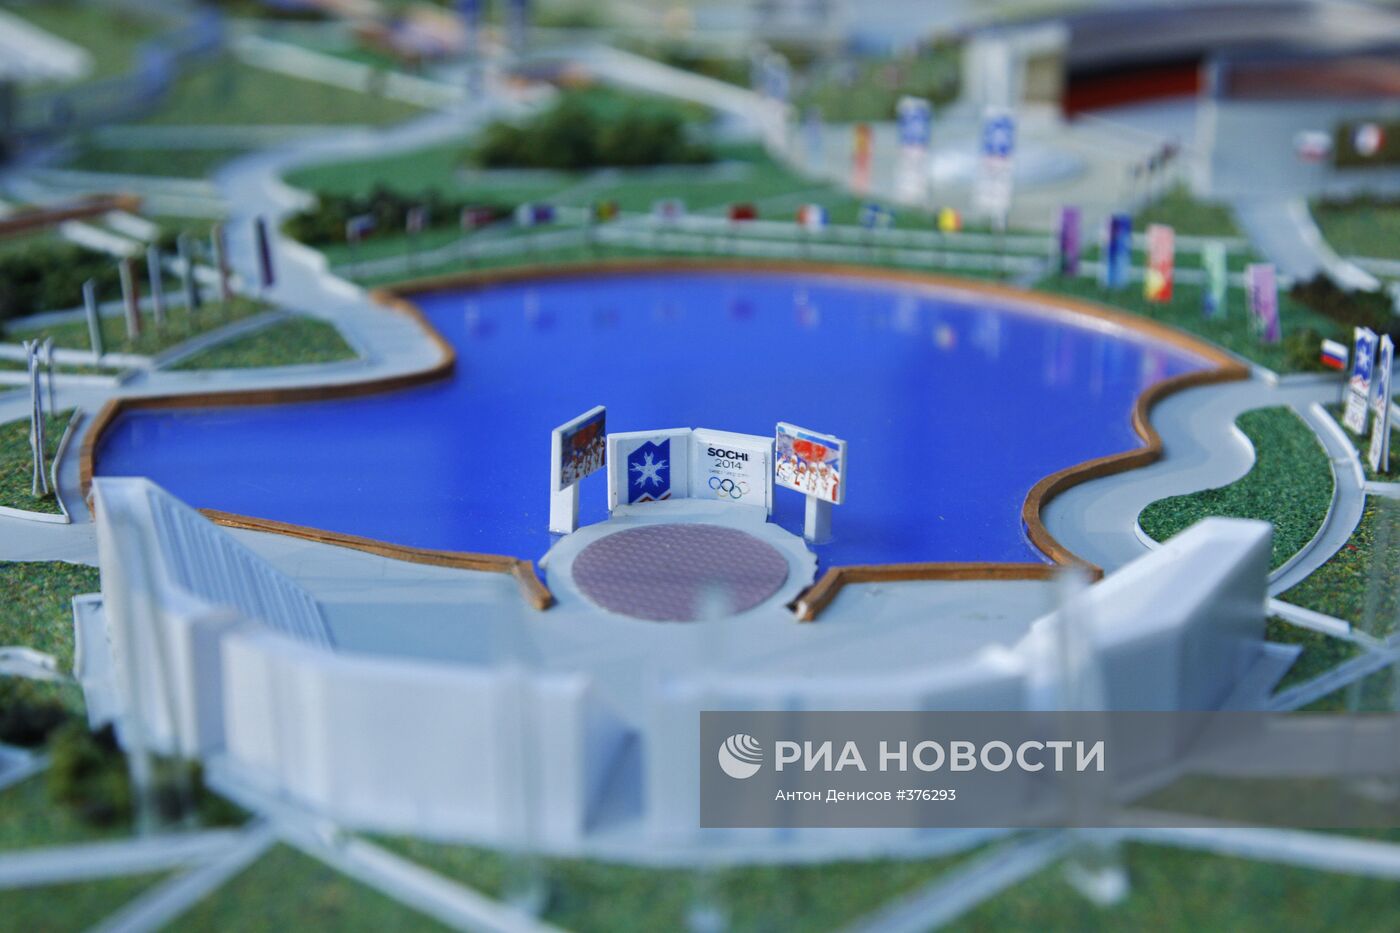 "Планировочный макет комплекса олимпийских объектов Сочи 2014"